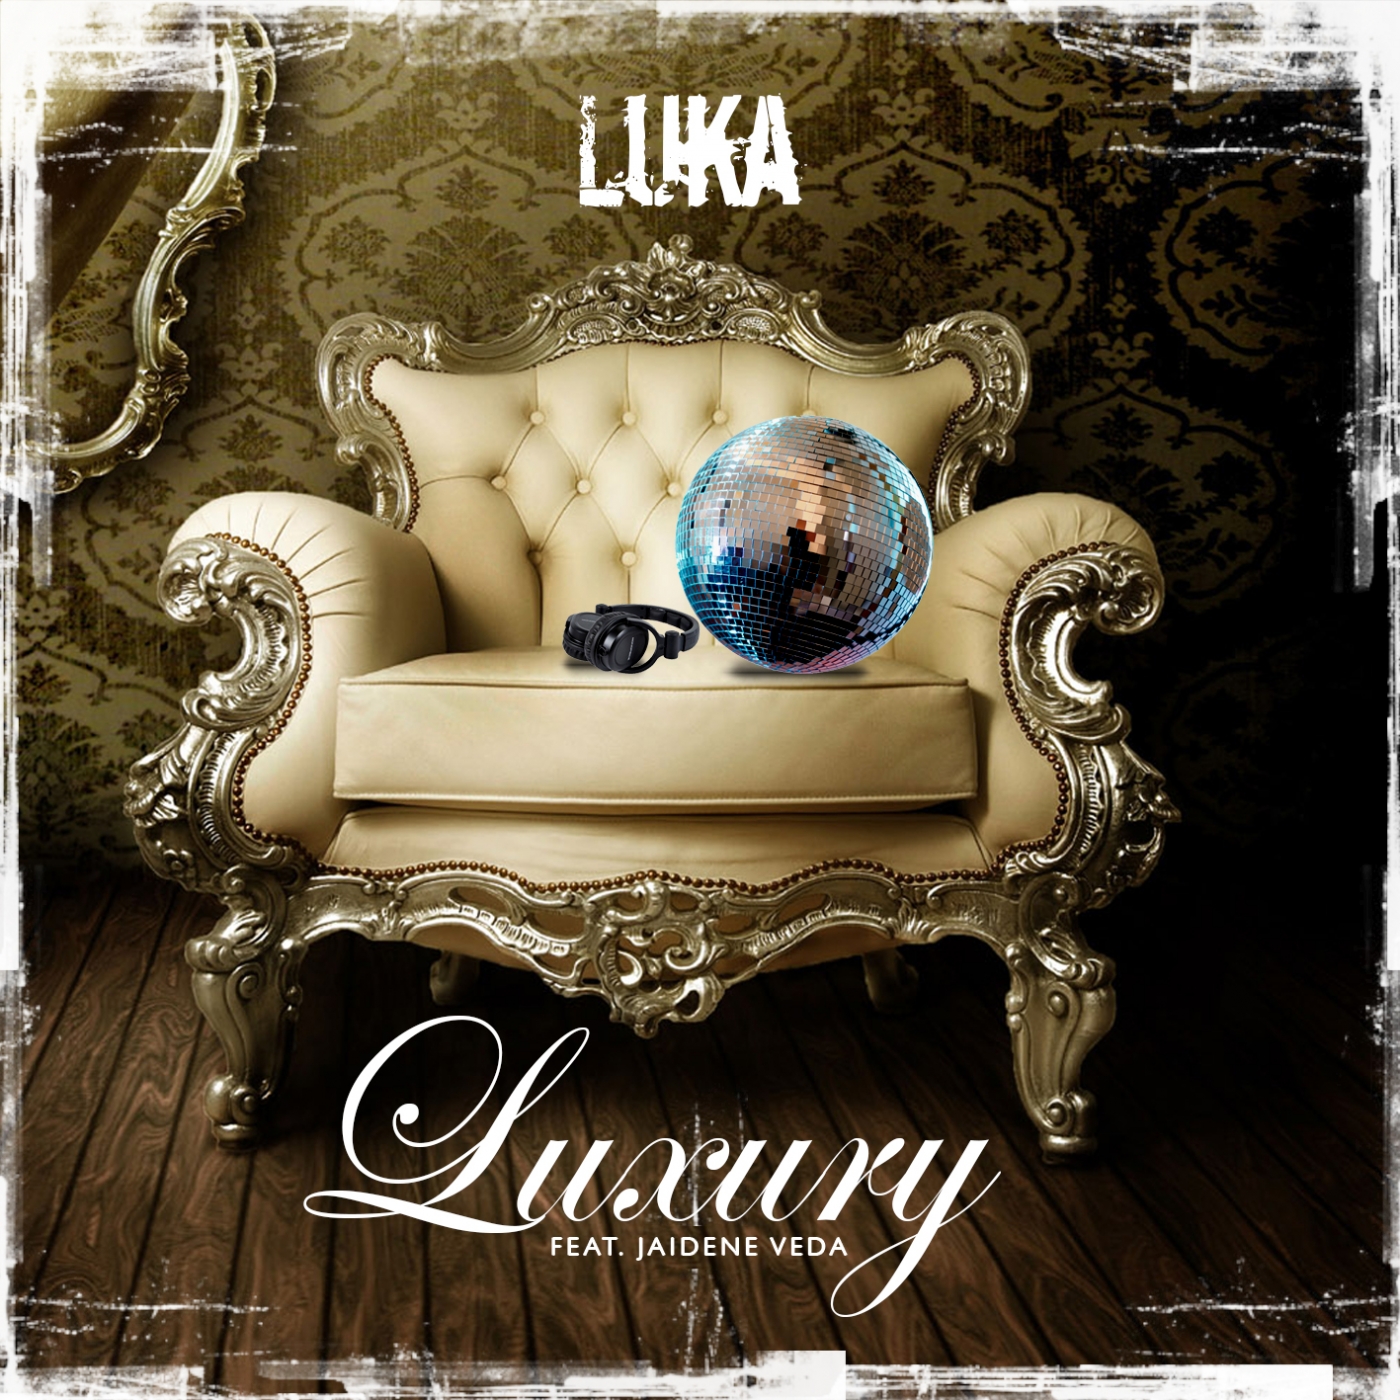 Luka feat. Лакшери альбом. Лакшери альбом обложка. Обложка для трека Luxury. Luxury Cover album.